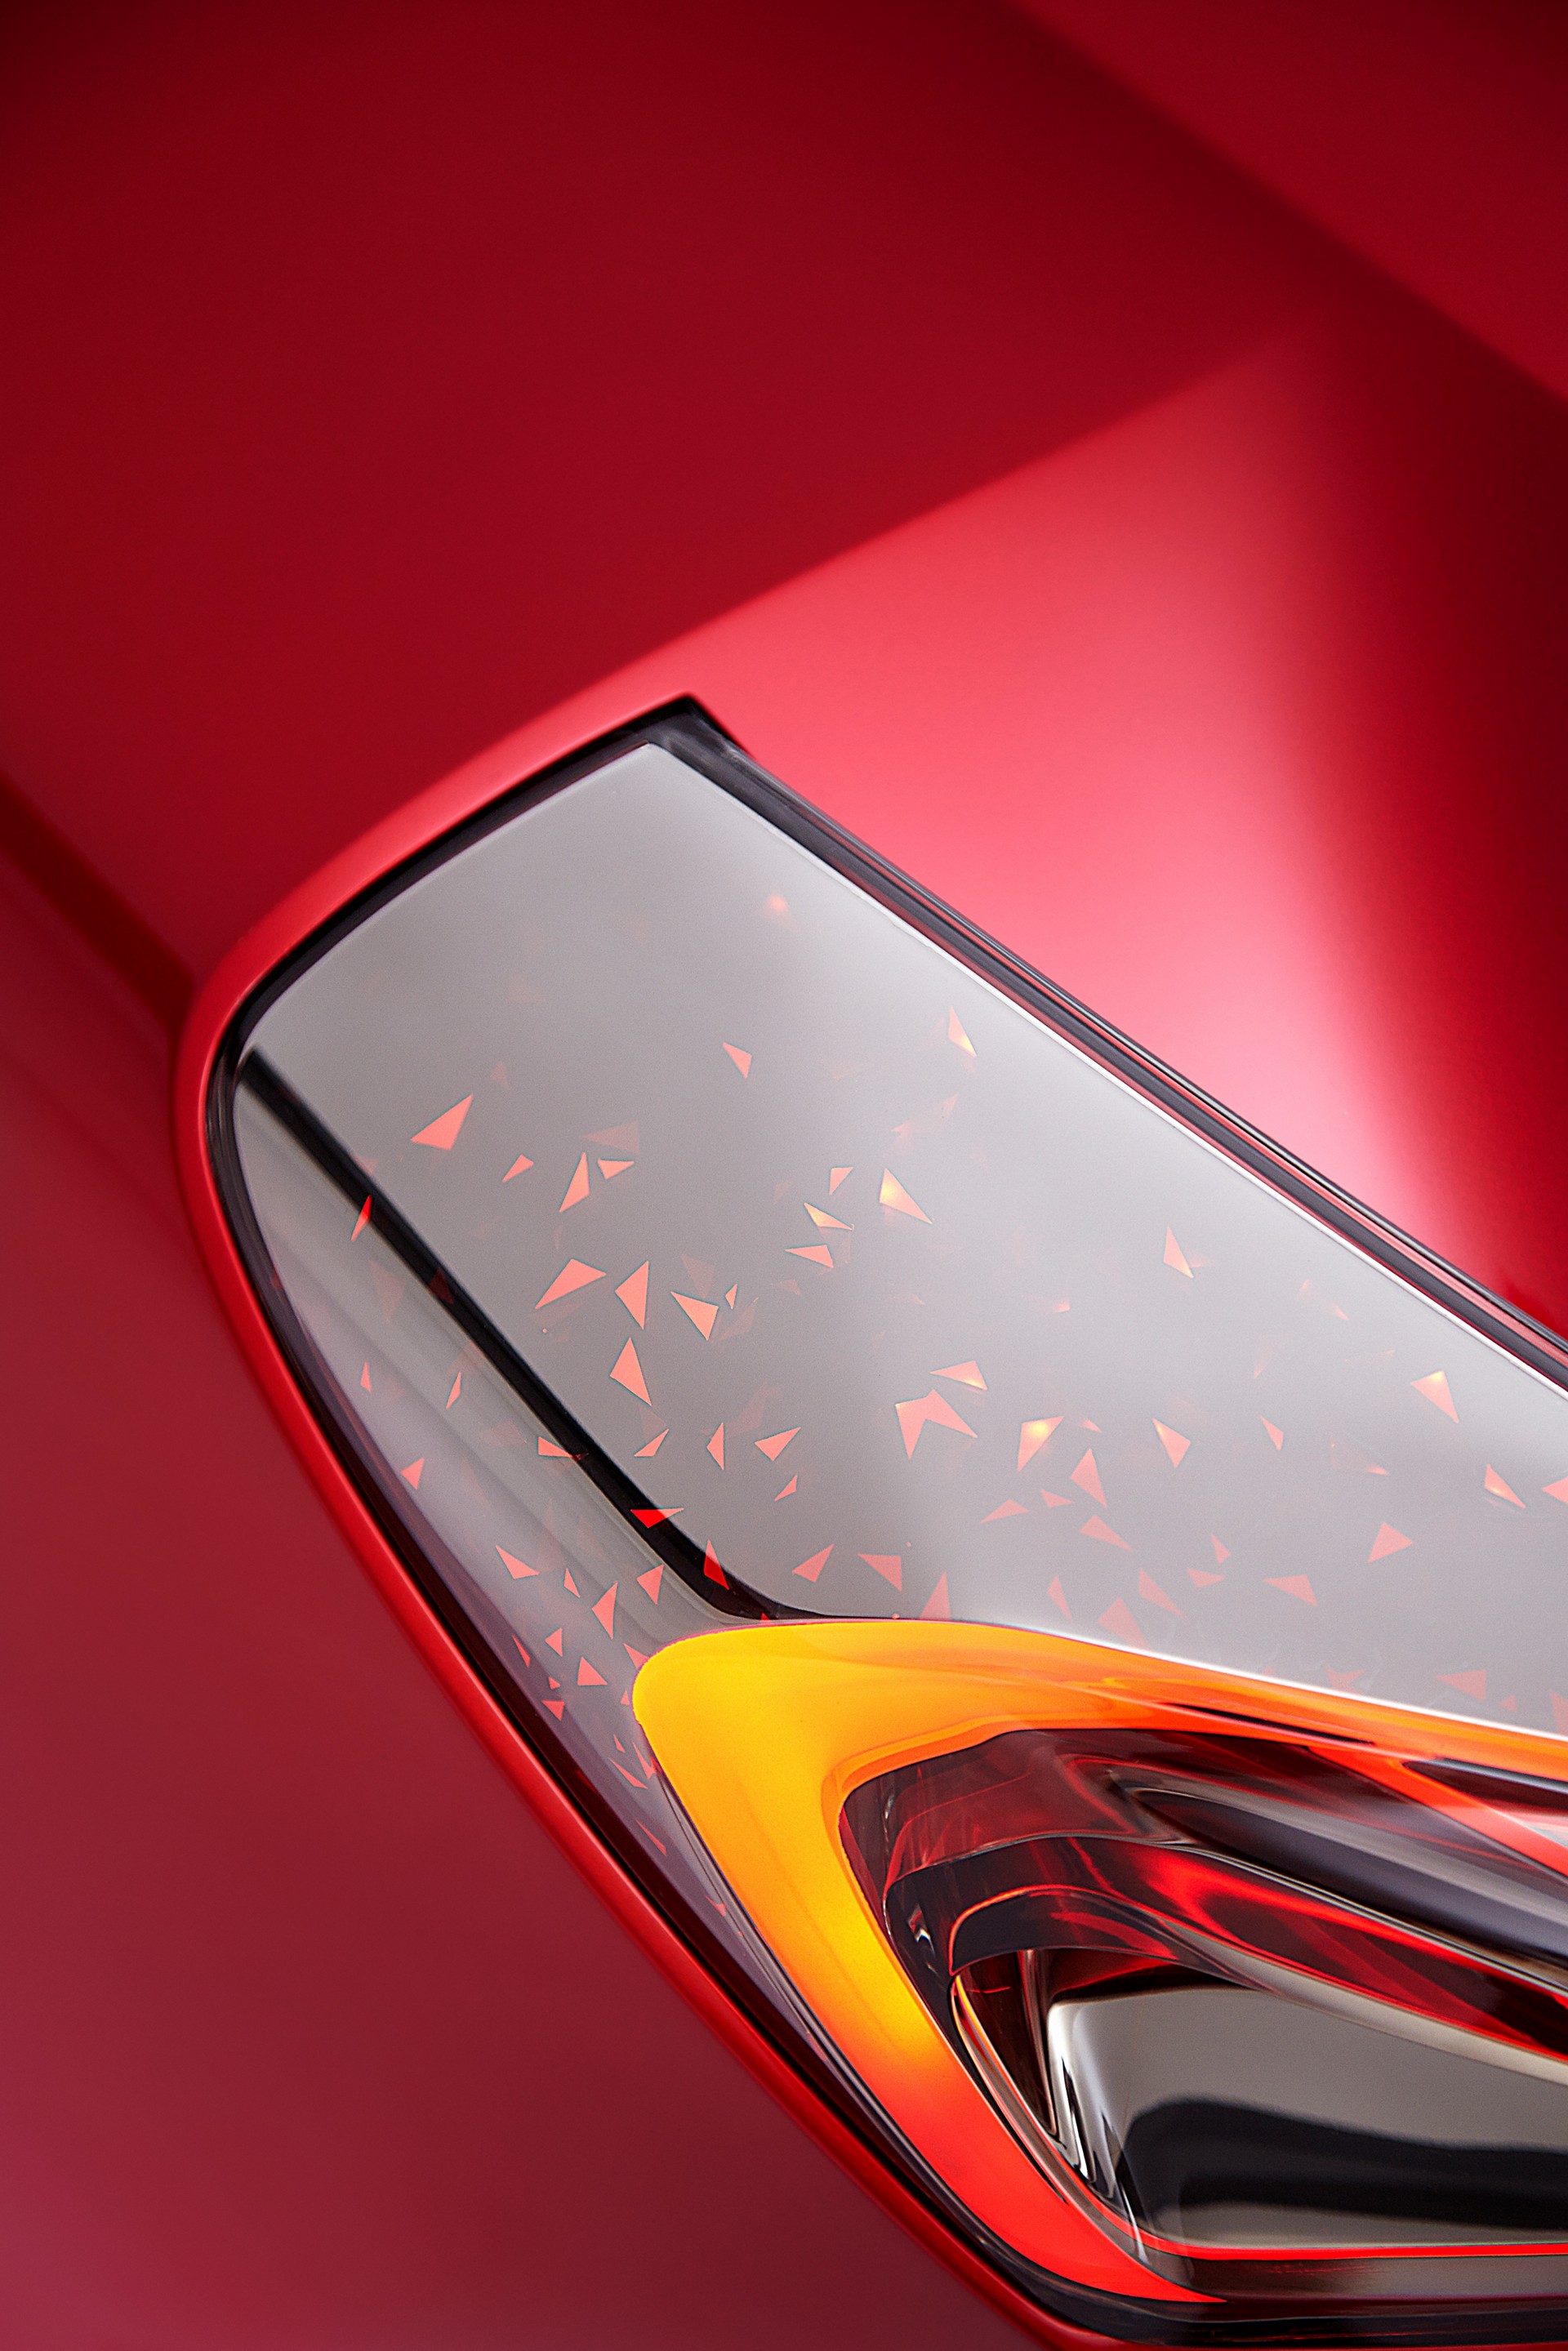 2016 Acura Precision Concept © Honda Motor Co. Ltd.